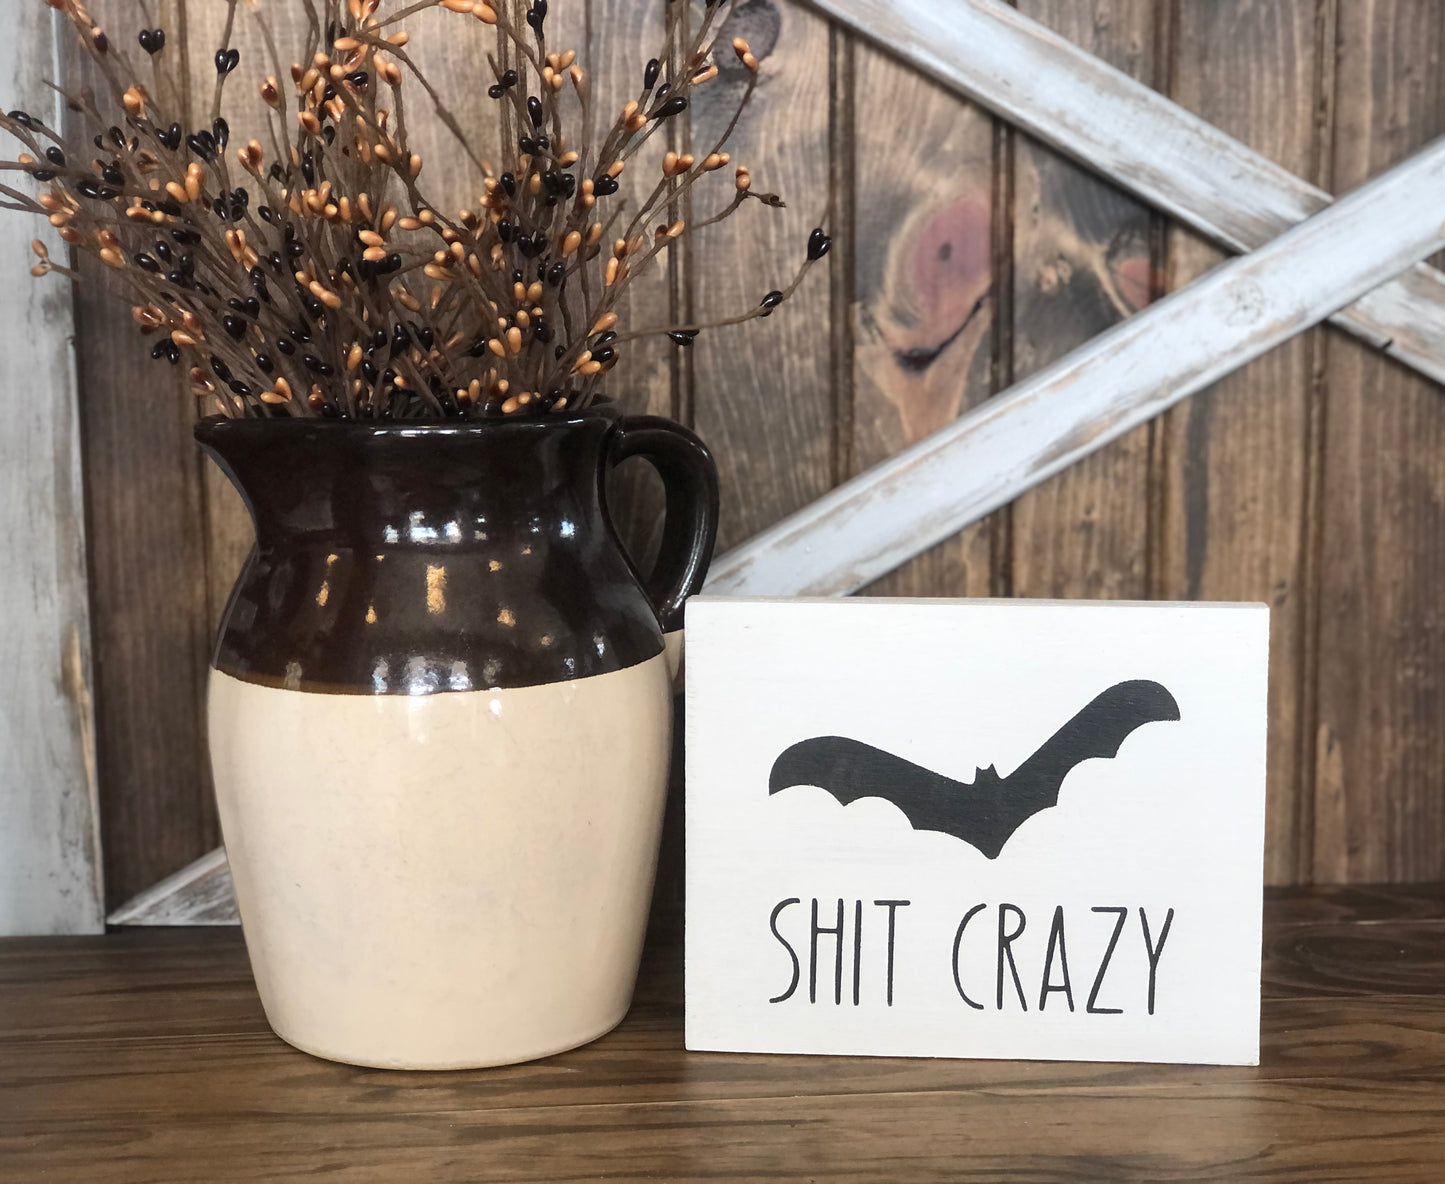 "Bat shit crazy" funny wood sign